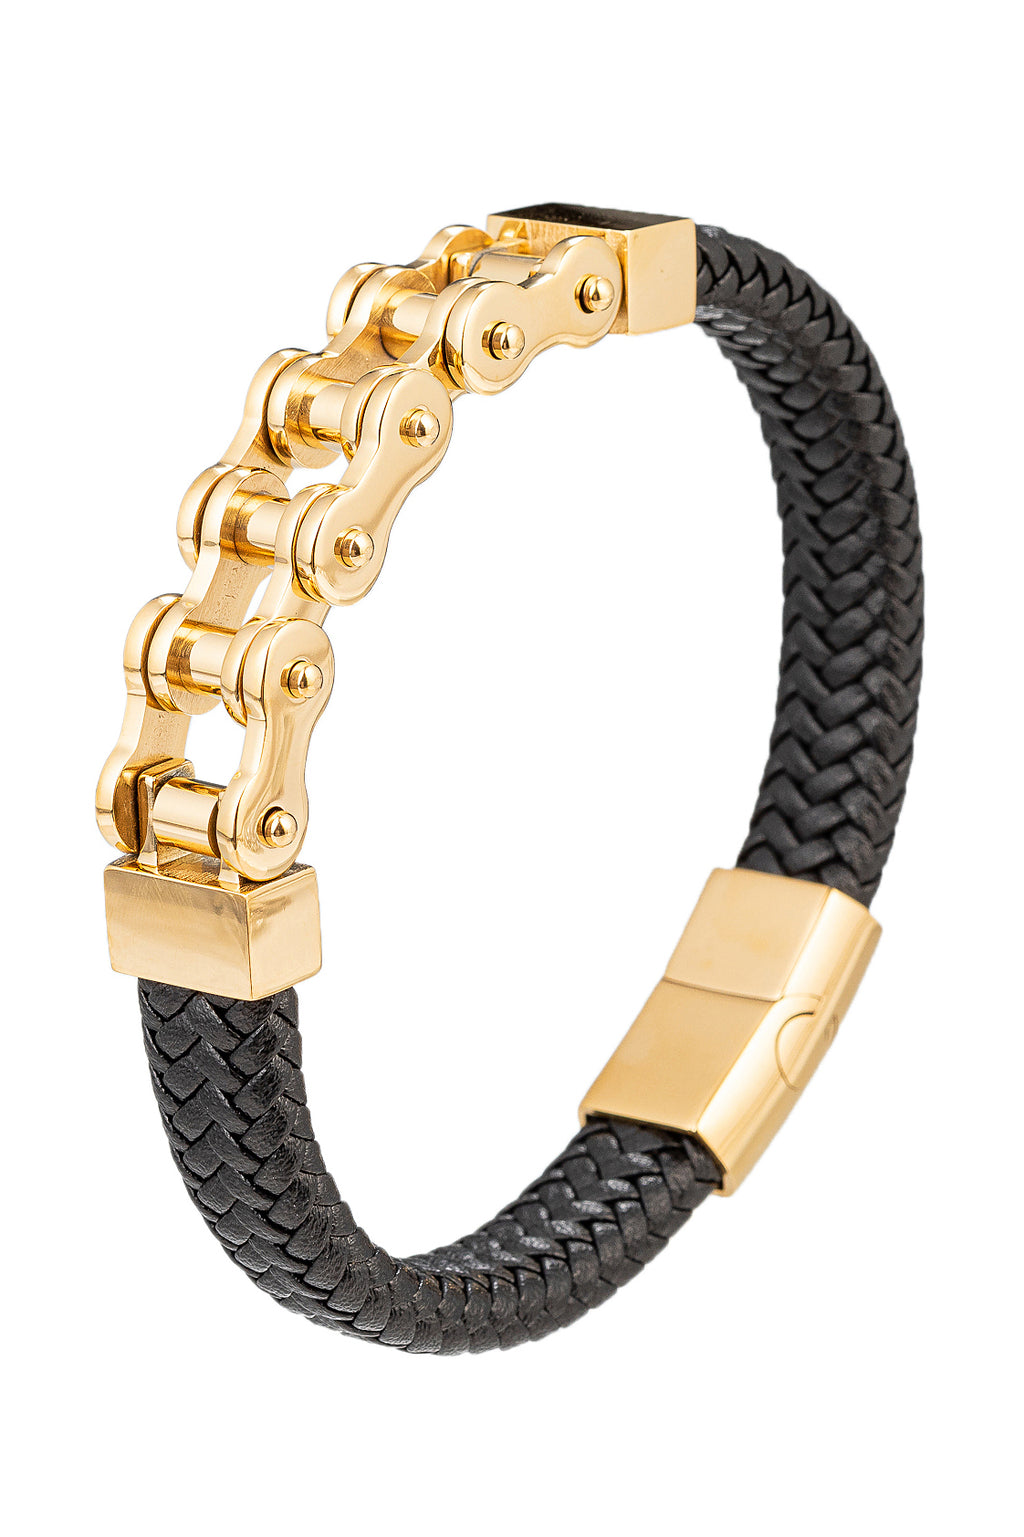 Gold tone titanium and black authentic leather biker chain bracelet.